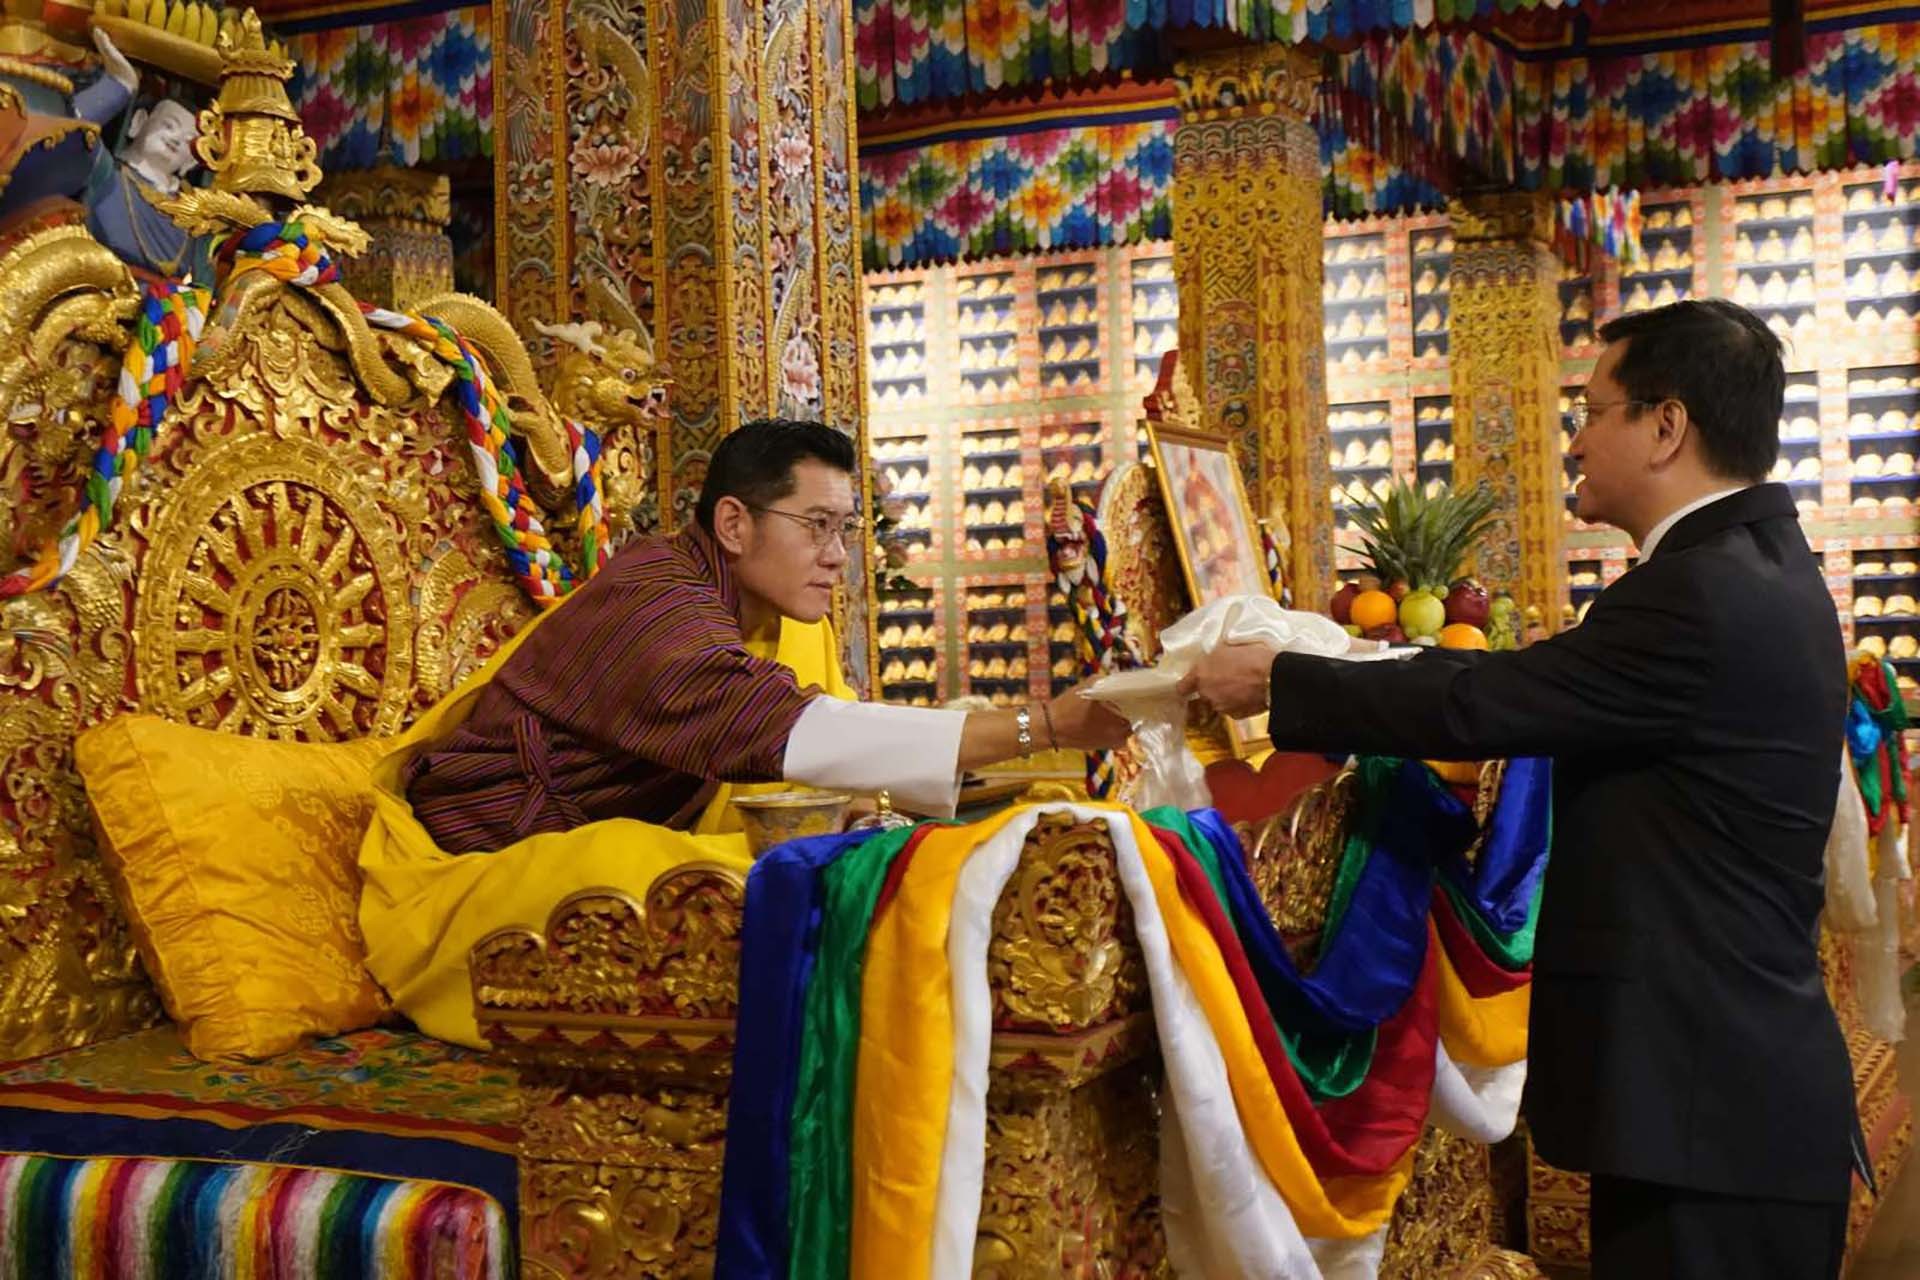 Đại sứ Nguyễn Thanh Hải trình Thư ủy nhiệm của Chủ tịch nước Võ Văn Thưởng lên Quốc vương Bhutan Jigme Khesar Namgyel Wangchuck.